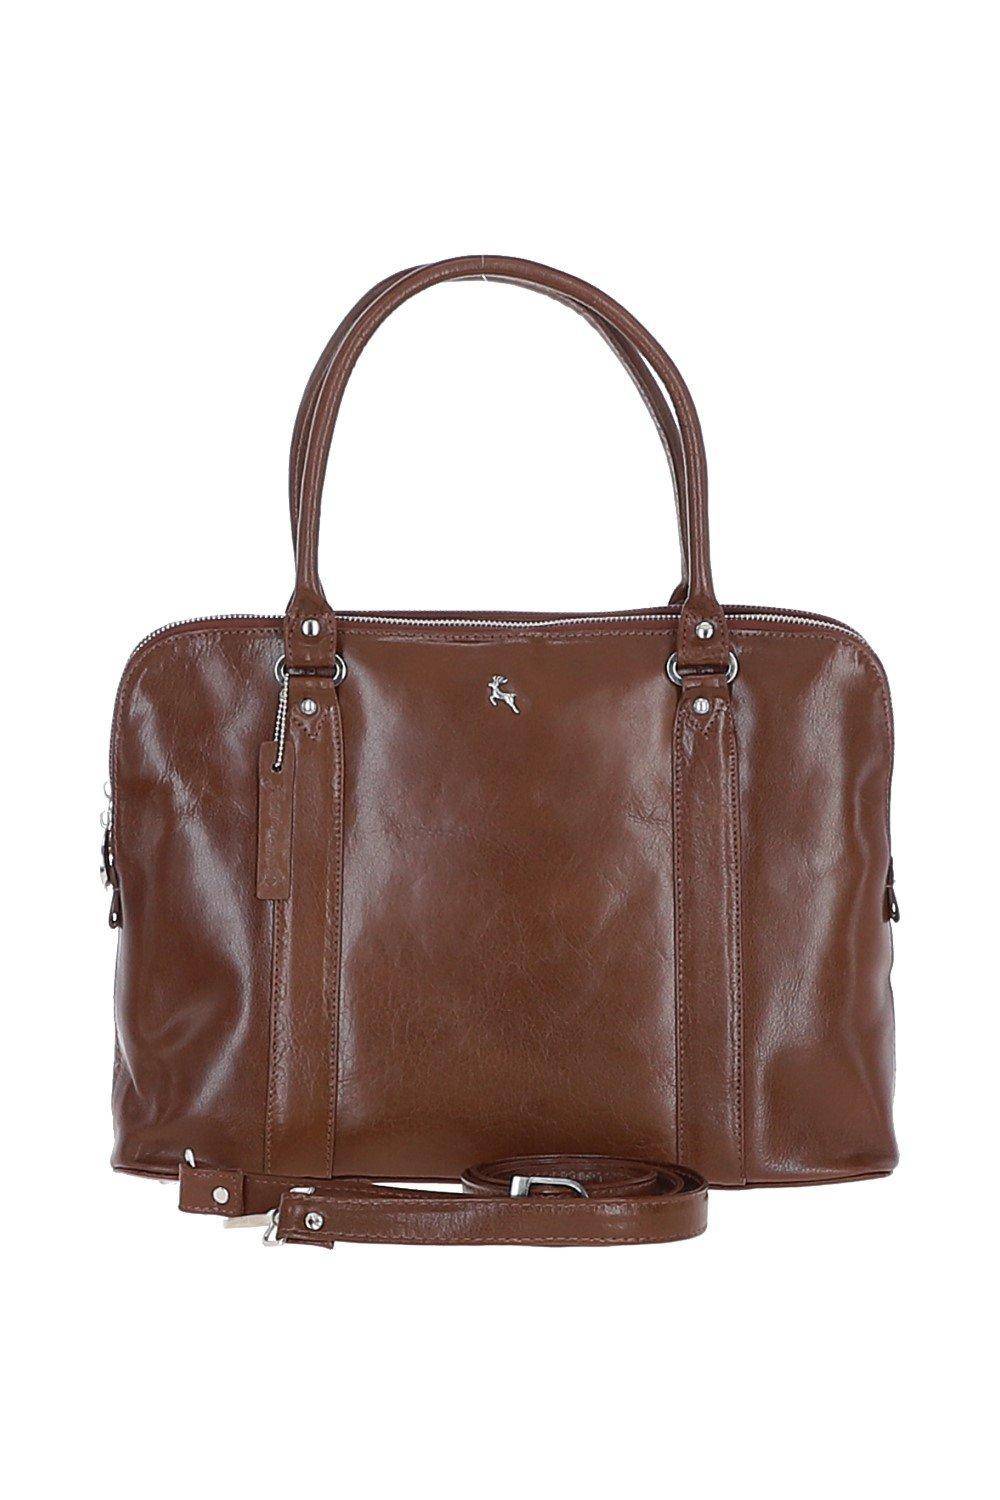 Большая трехсекционная кожаная сумка растительного дубления Ashwood Leather, коричневый сумка sara burglar 21 a0w3m489borsapellemichelapersonbeige повседневная натуральная кожа внутренний карман регулируемый ремень бежевый